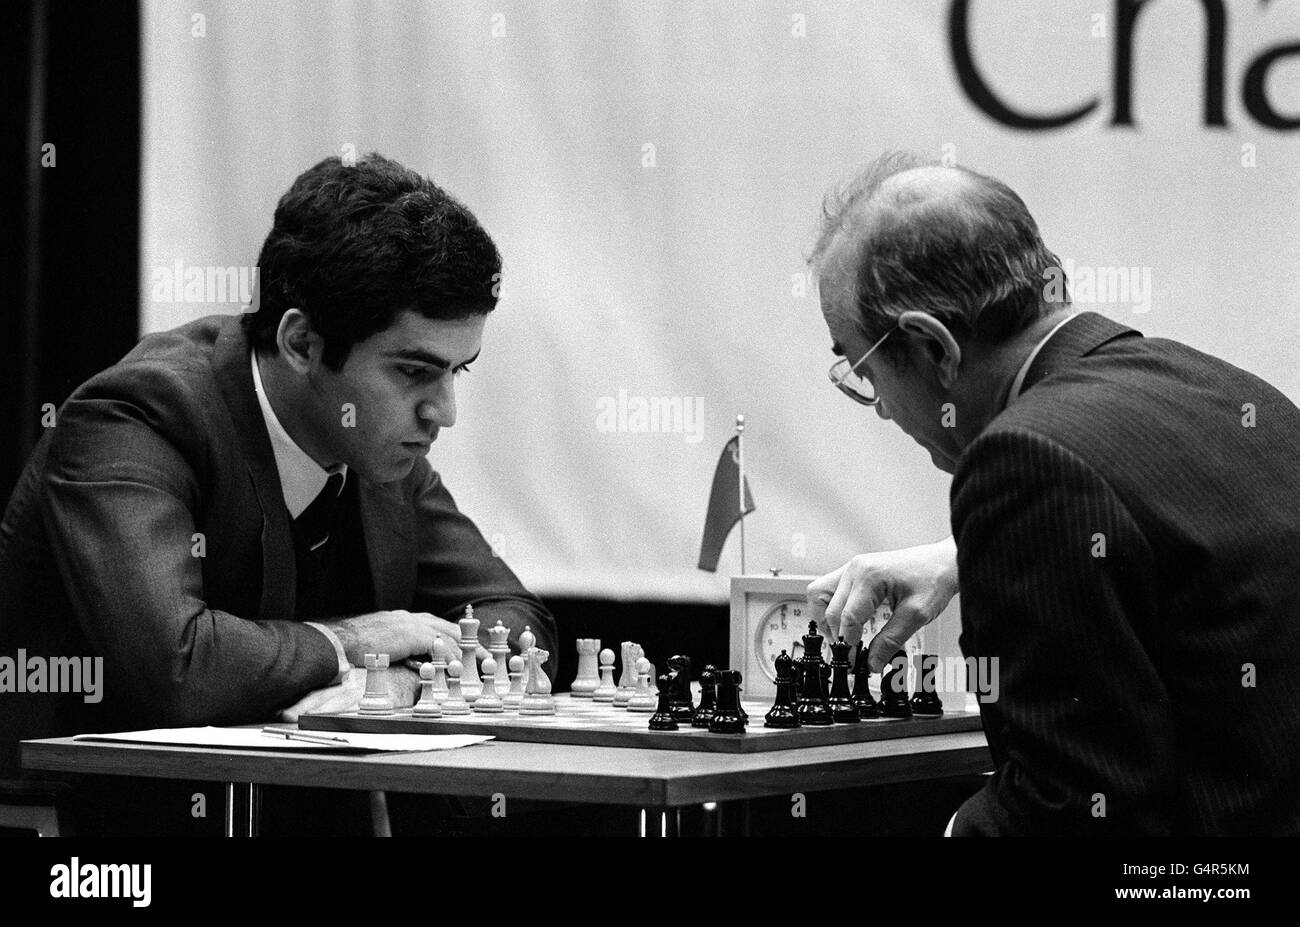 13-year-old Garry Kasparov smashes the Sämisch - Tbilisi 1976 